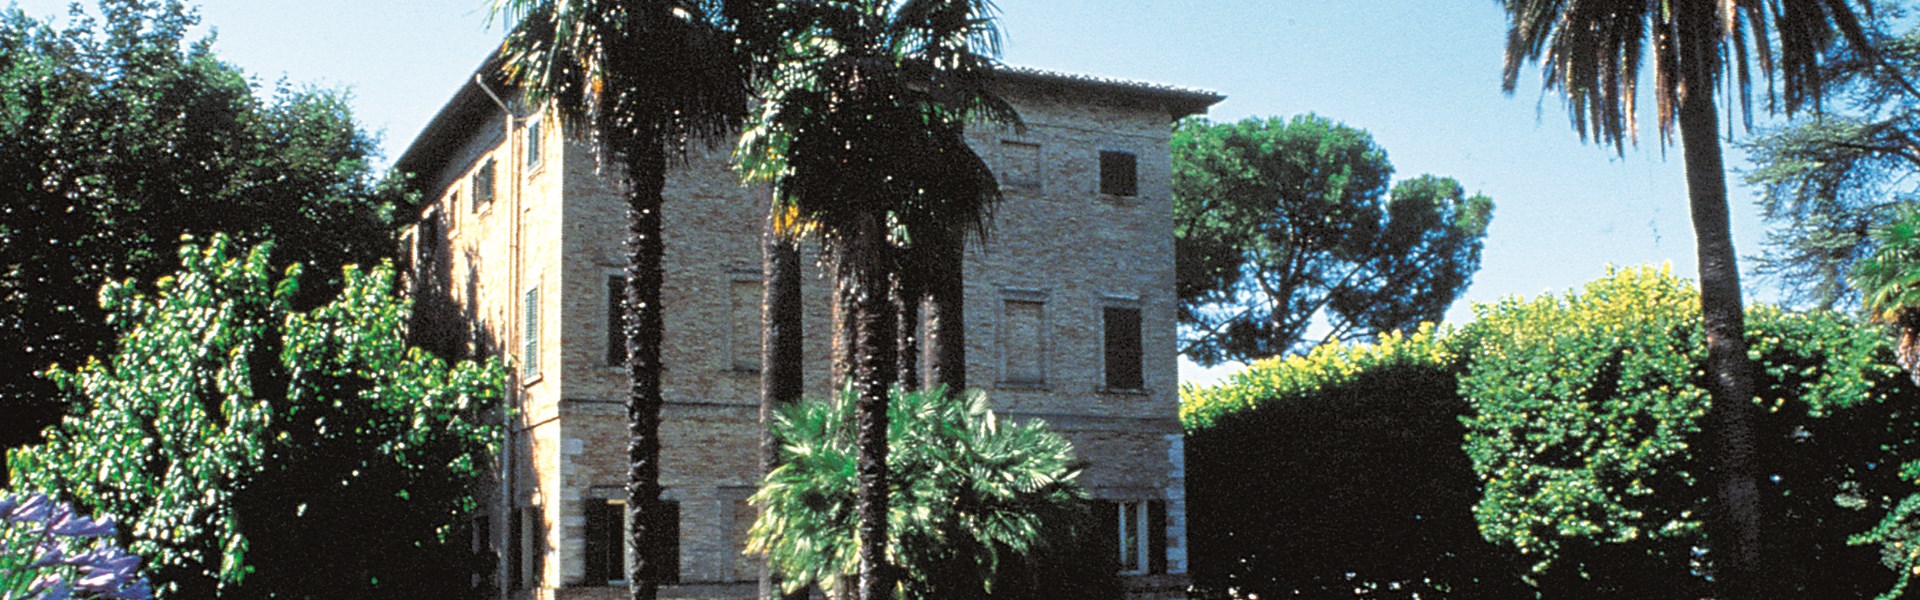 Castel di Lama - Villa Panichi